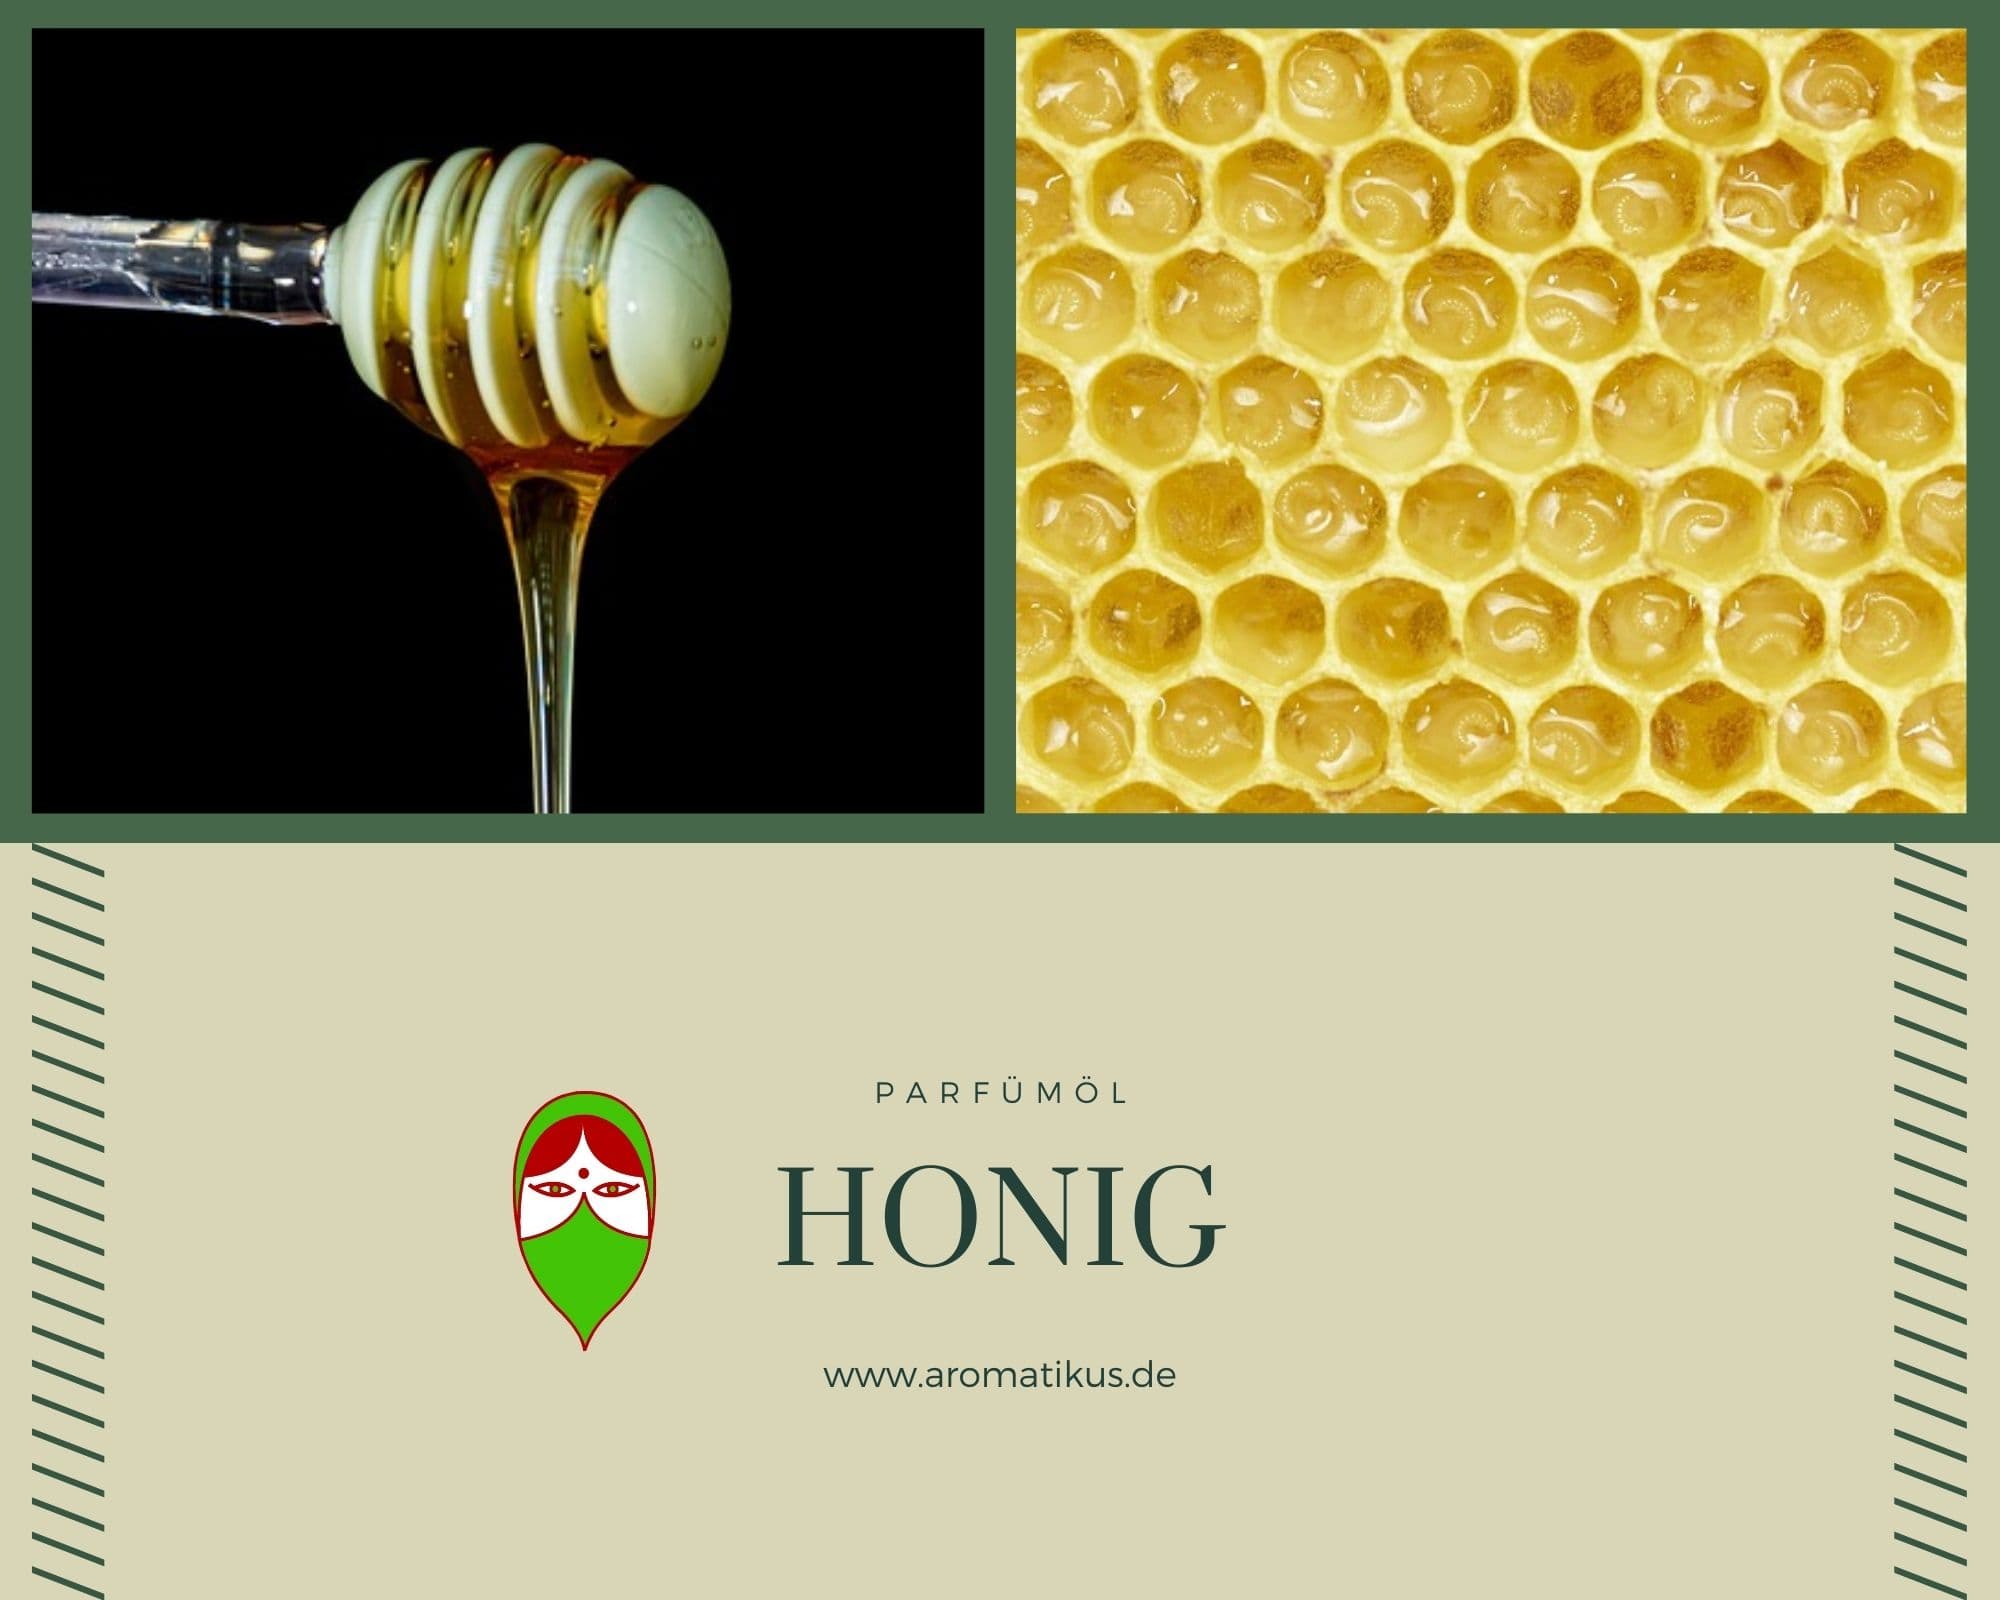 Ätherisches Duftöl Honig als Parfümöl von Aromatikus